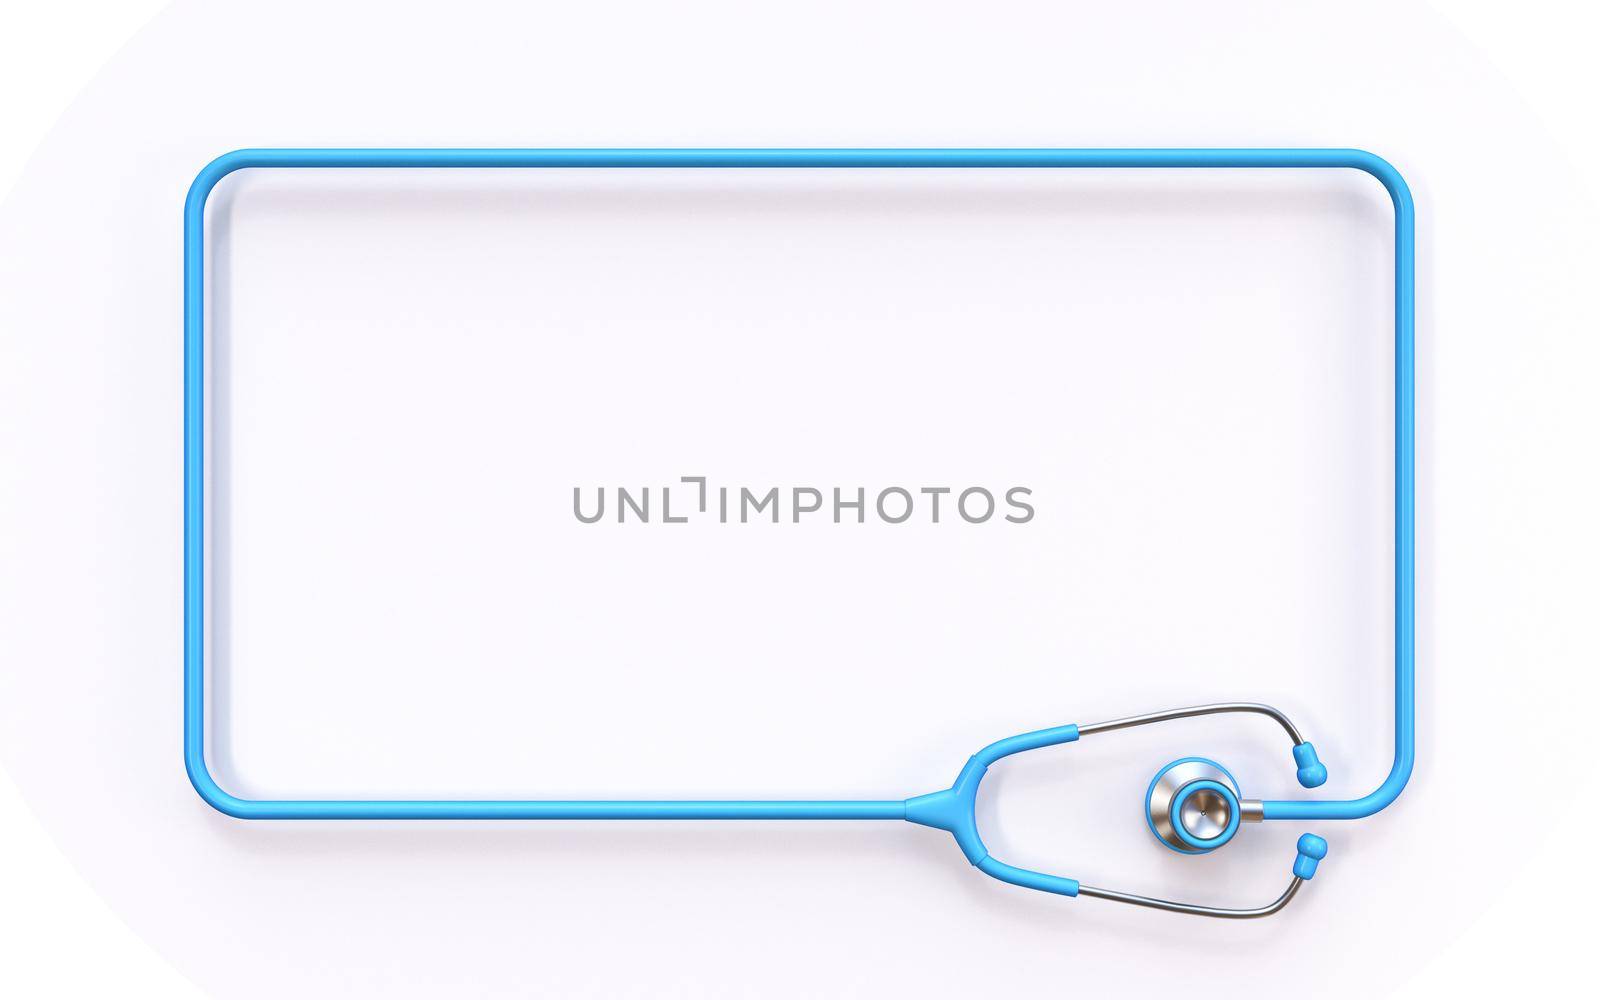 Rectangular stethoscope frame 3D rendering illustration isolated on white background